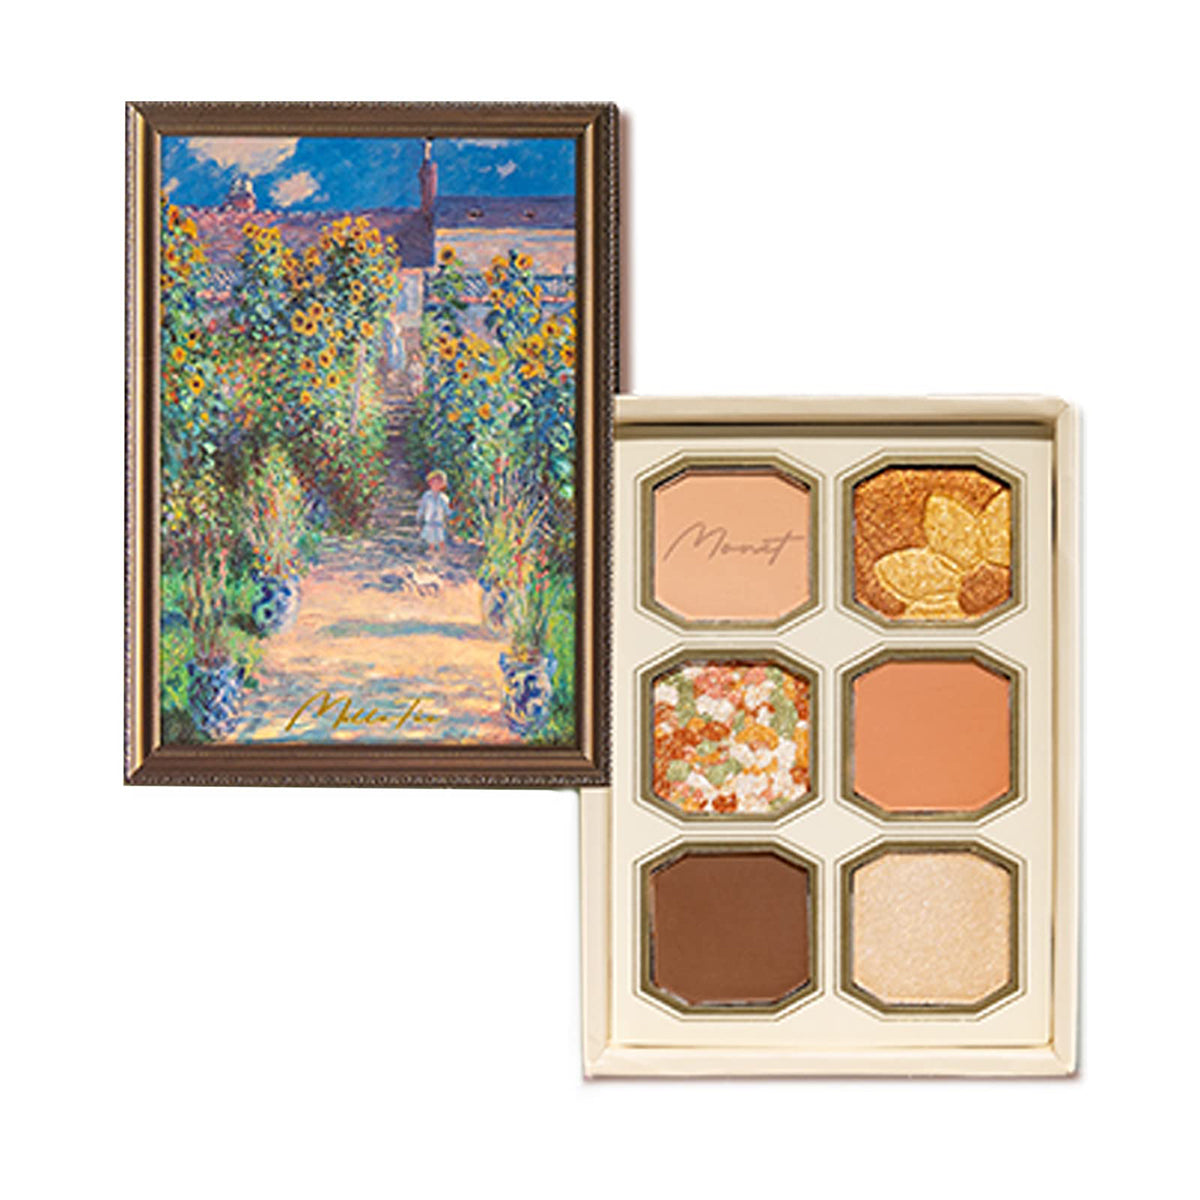 Millefee Painting Eyeshadow Palette-05 Monet's garden – MilleFée